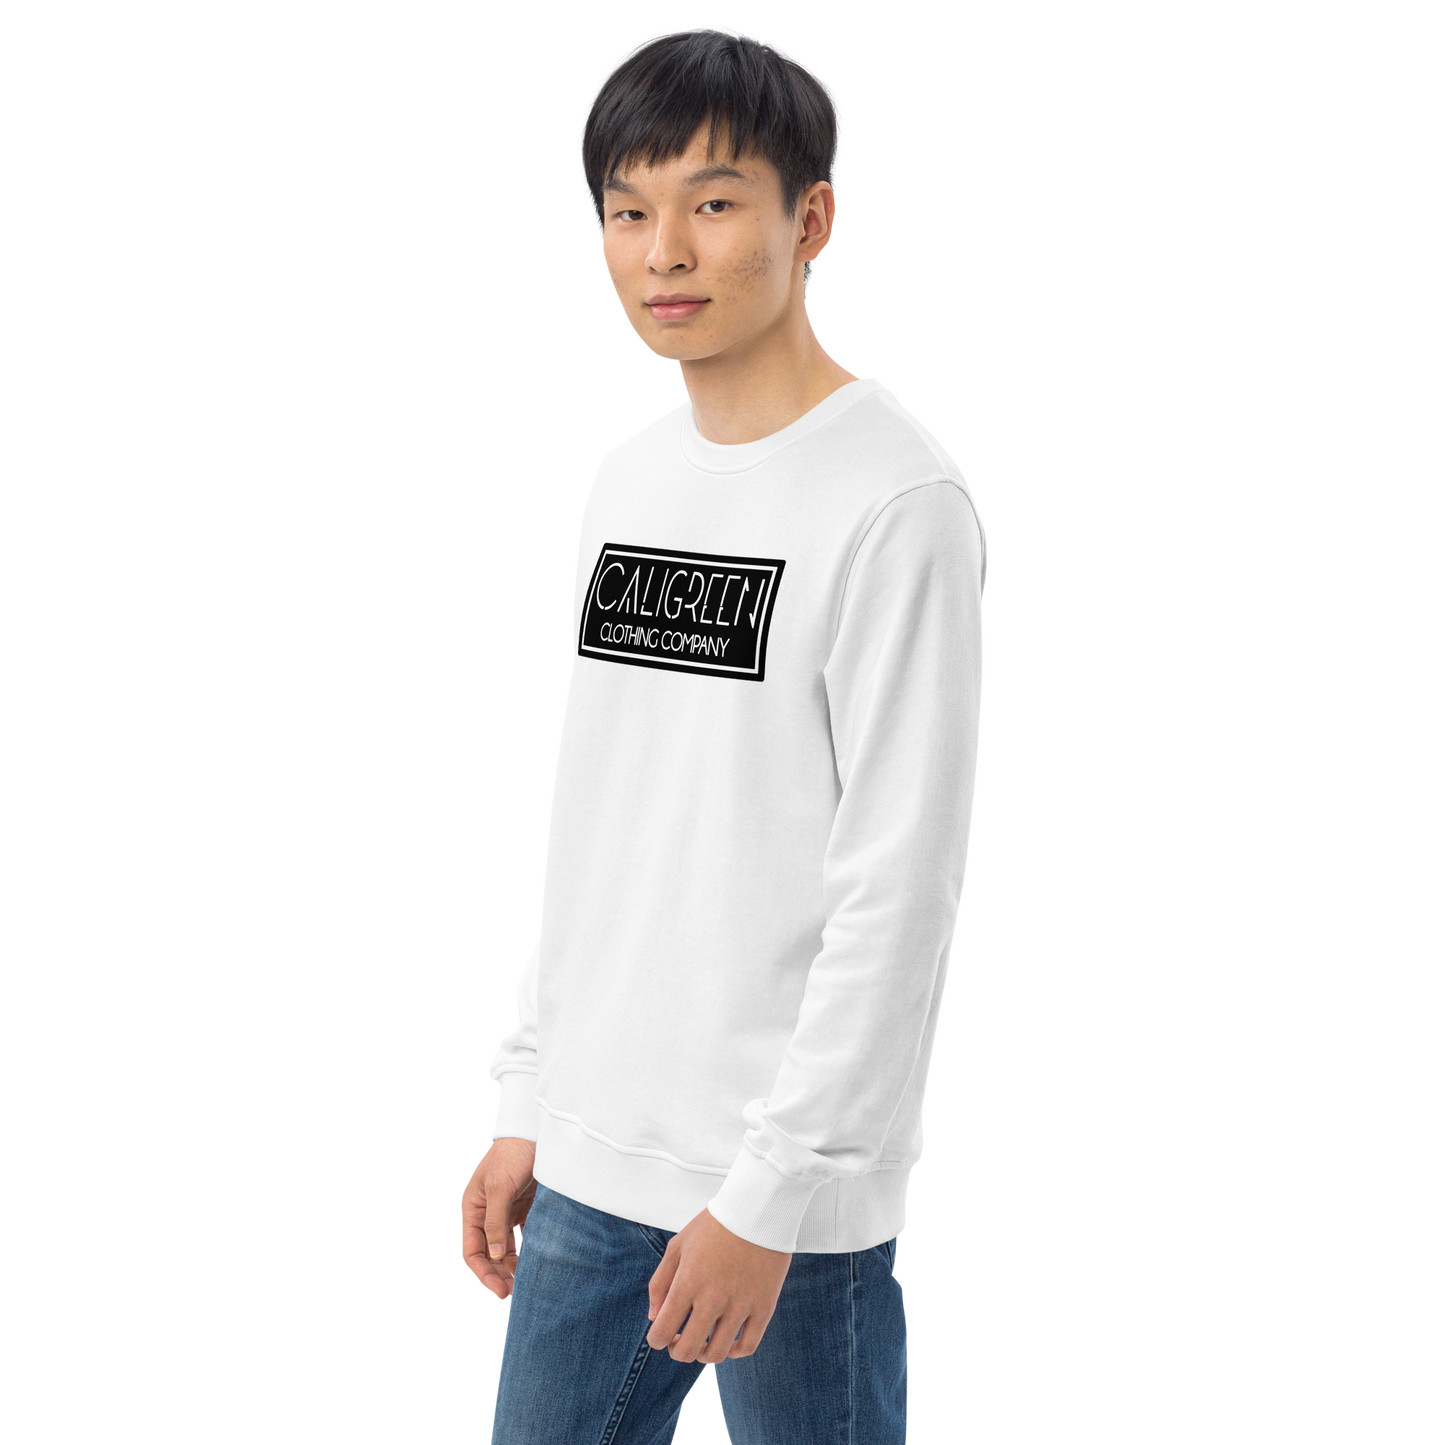 Eco Classic Sweatshirt